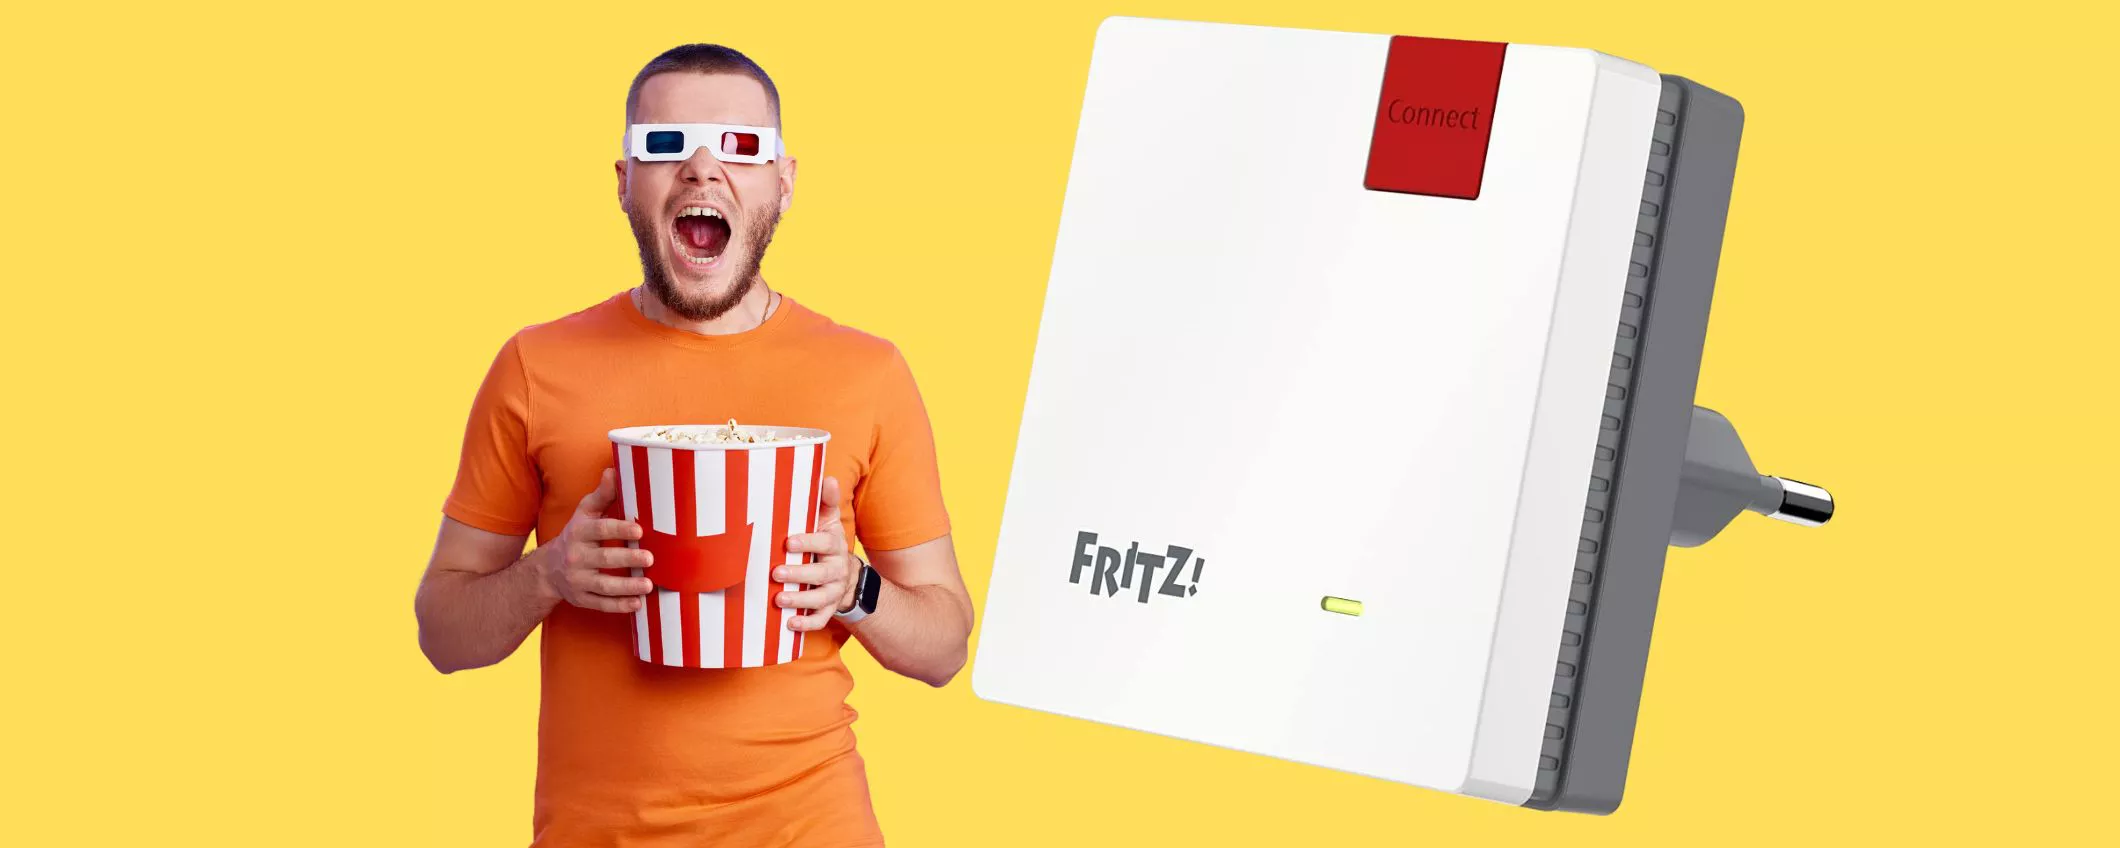 Sfonda i muri con il miglior ripetitore WiFi in circolazione: FRITZ!Repeater 600 a soli 29,99€